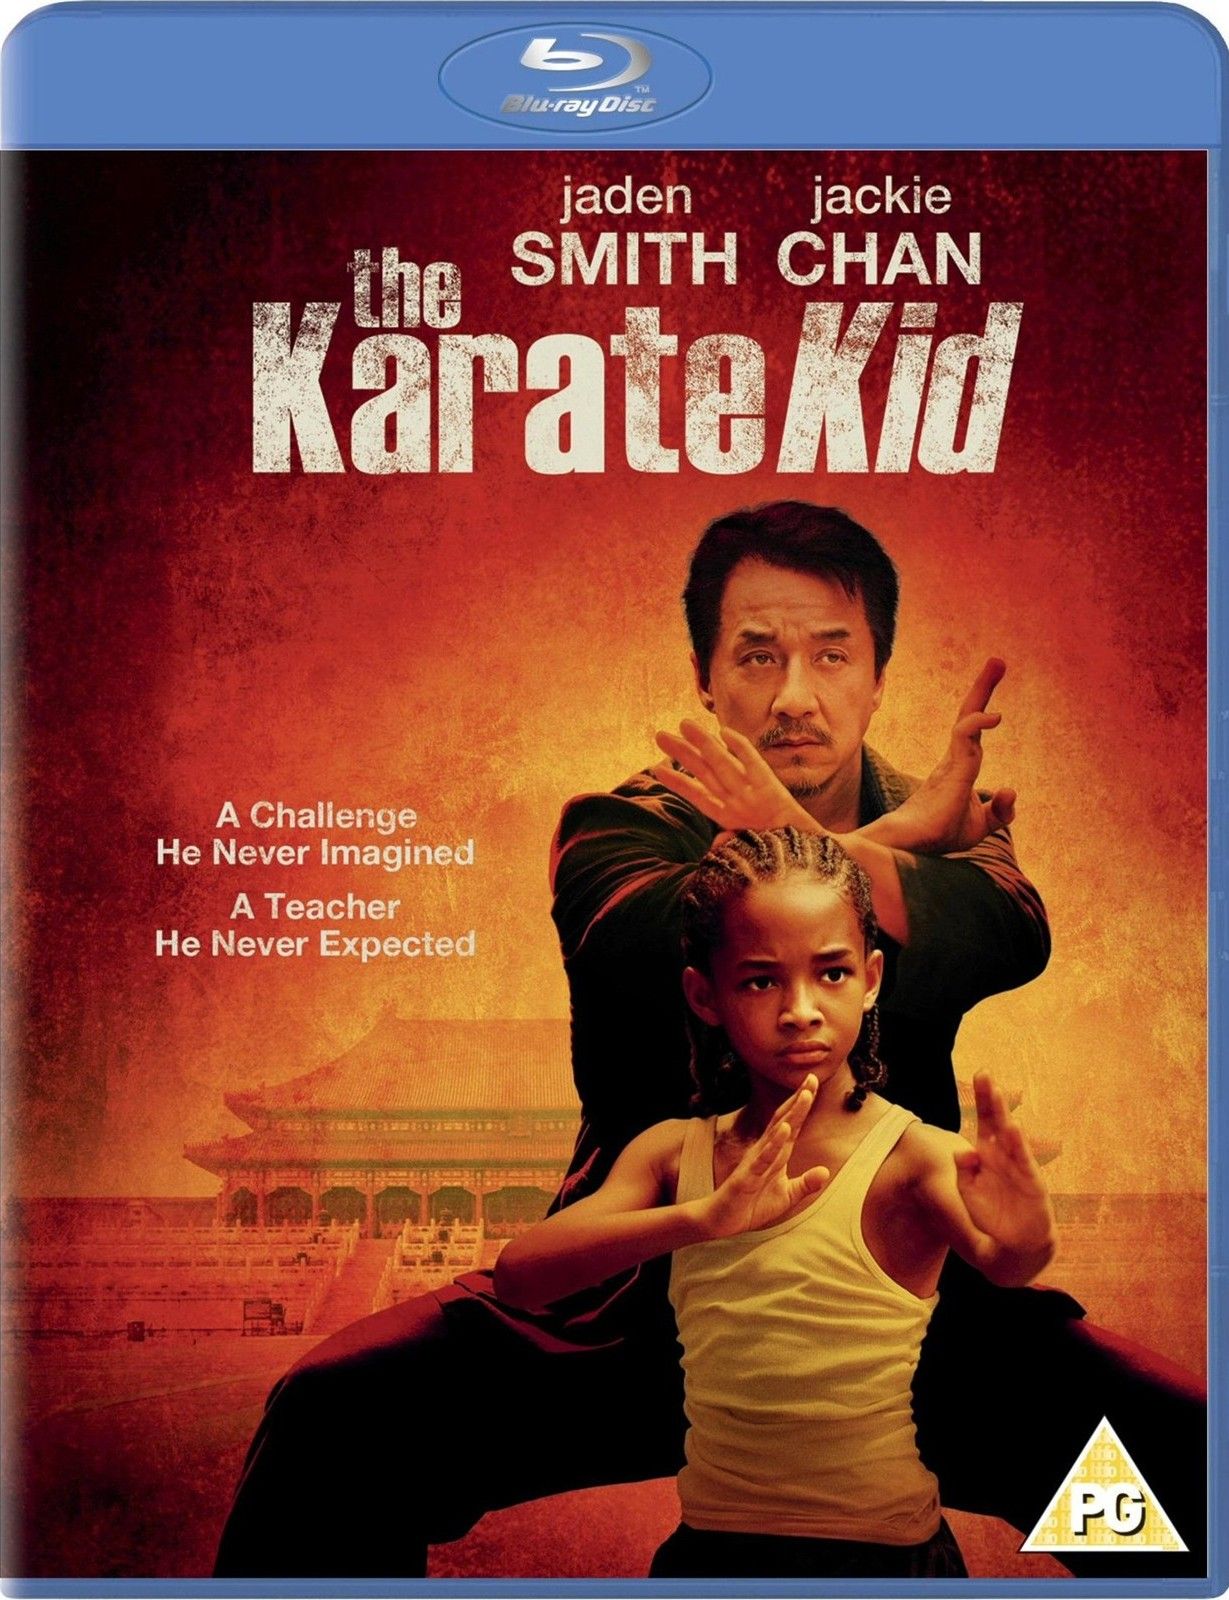 Watch Karate Kid 2010 Full Movie Online Free